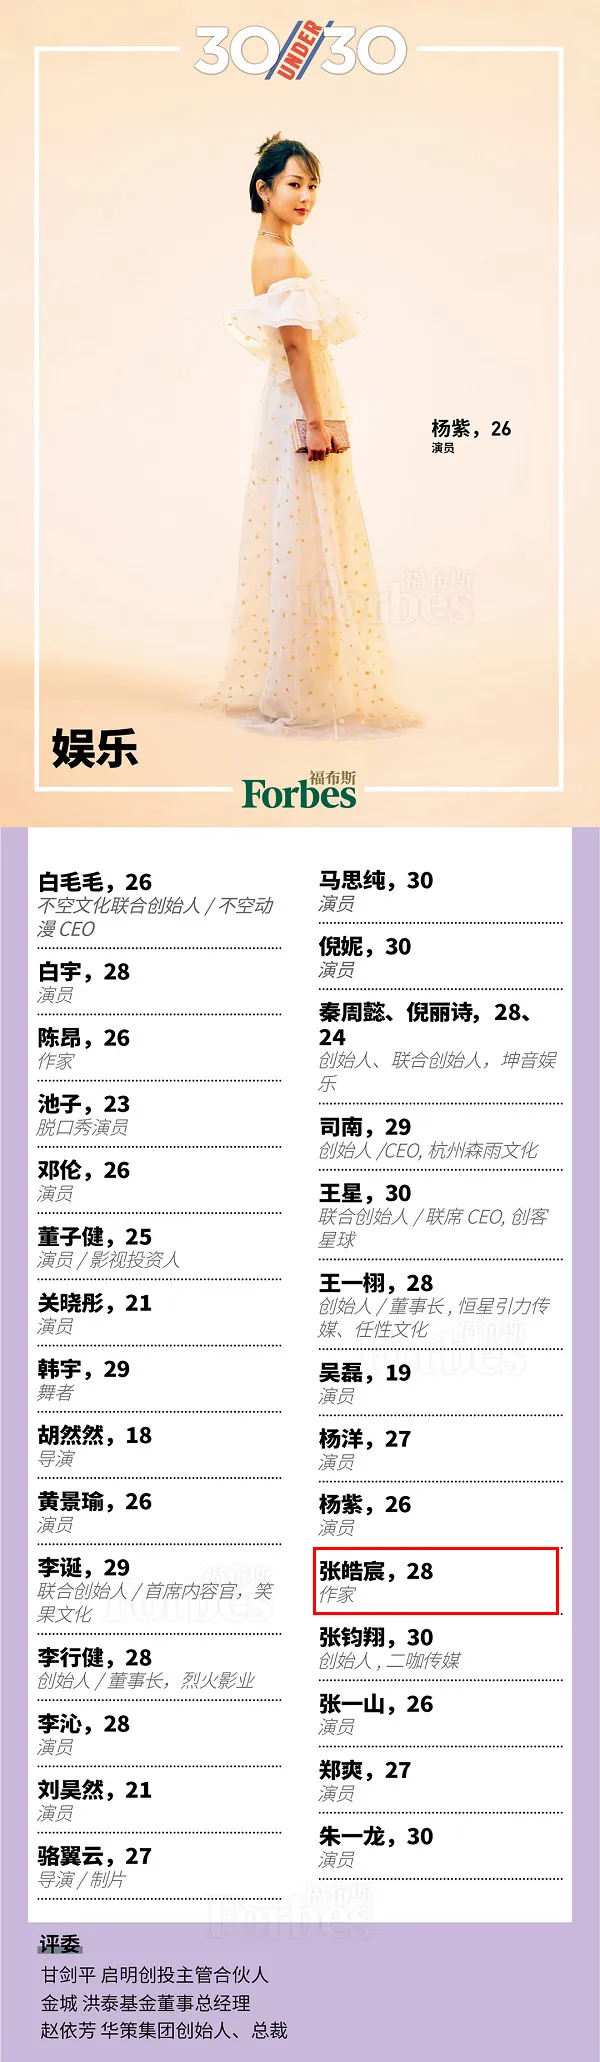 福布斯中国2018年30位30岁以下精英榜